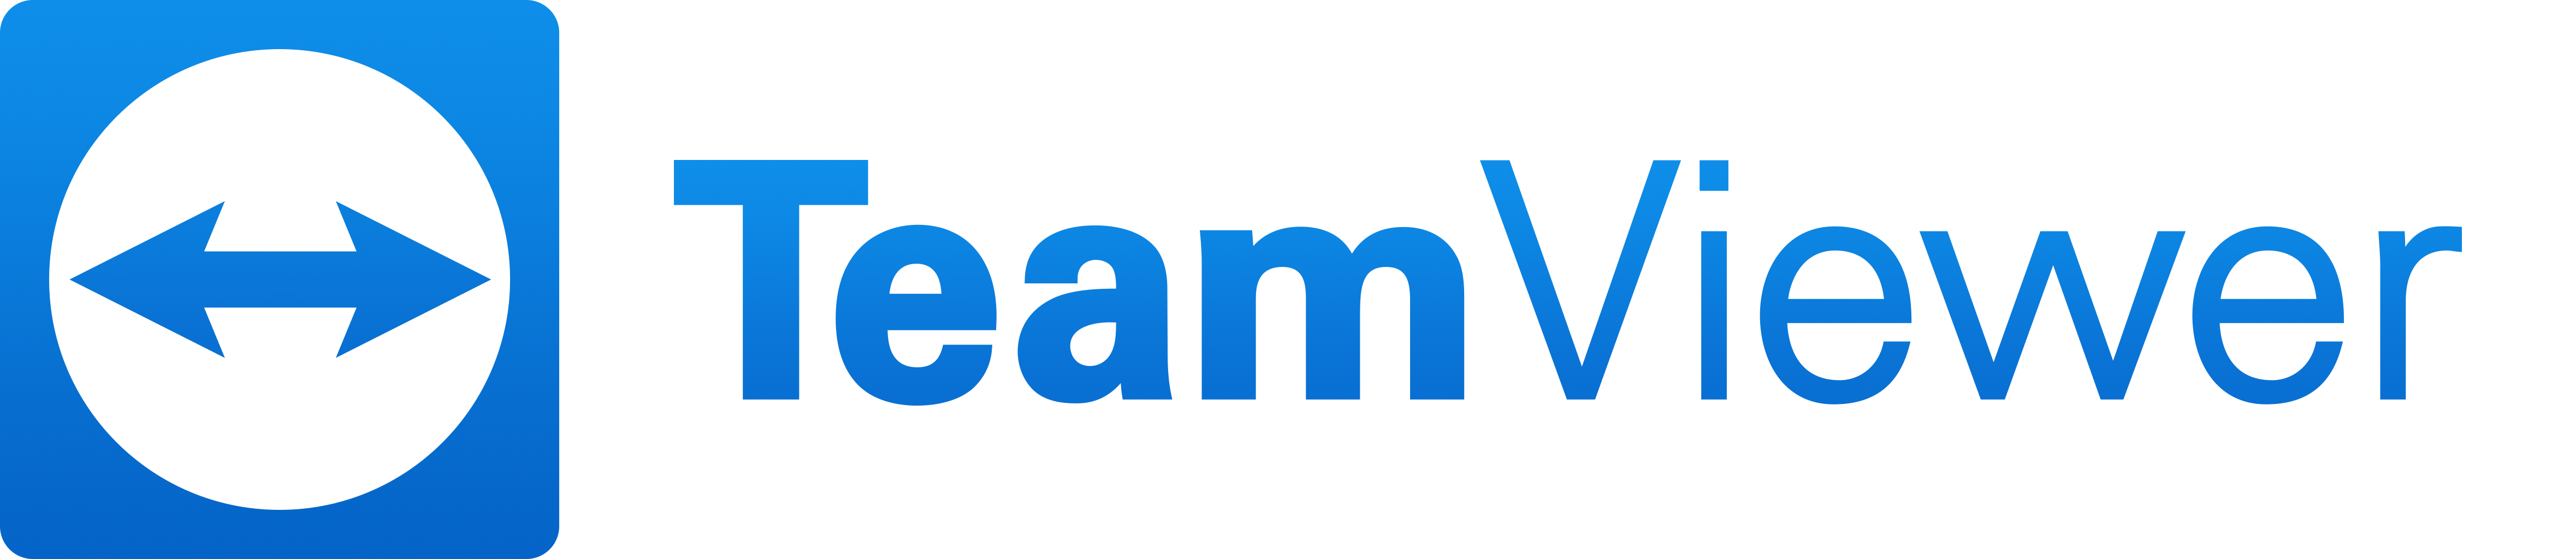 Download TeamViewer Vollversion